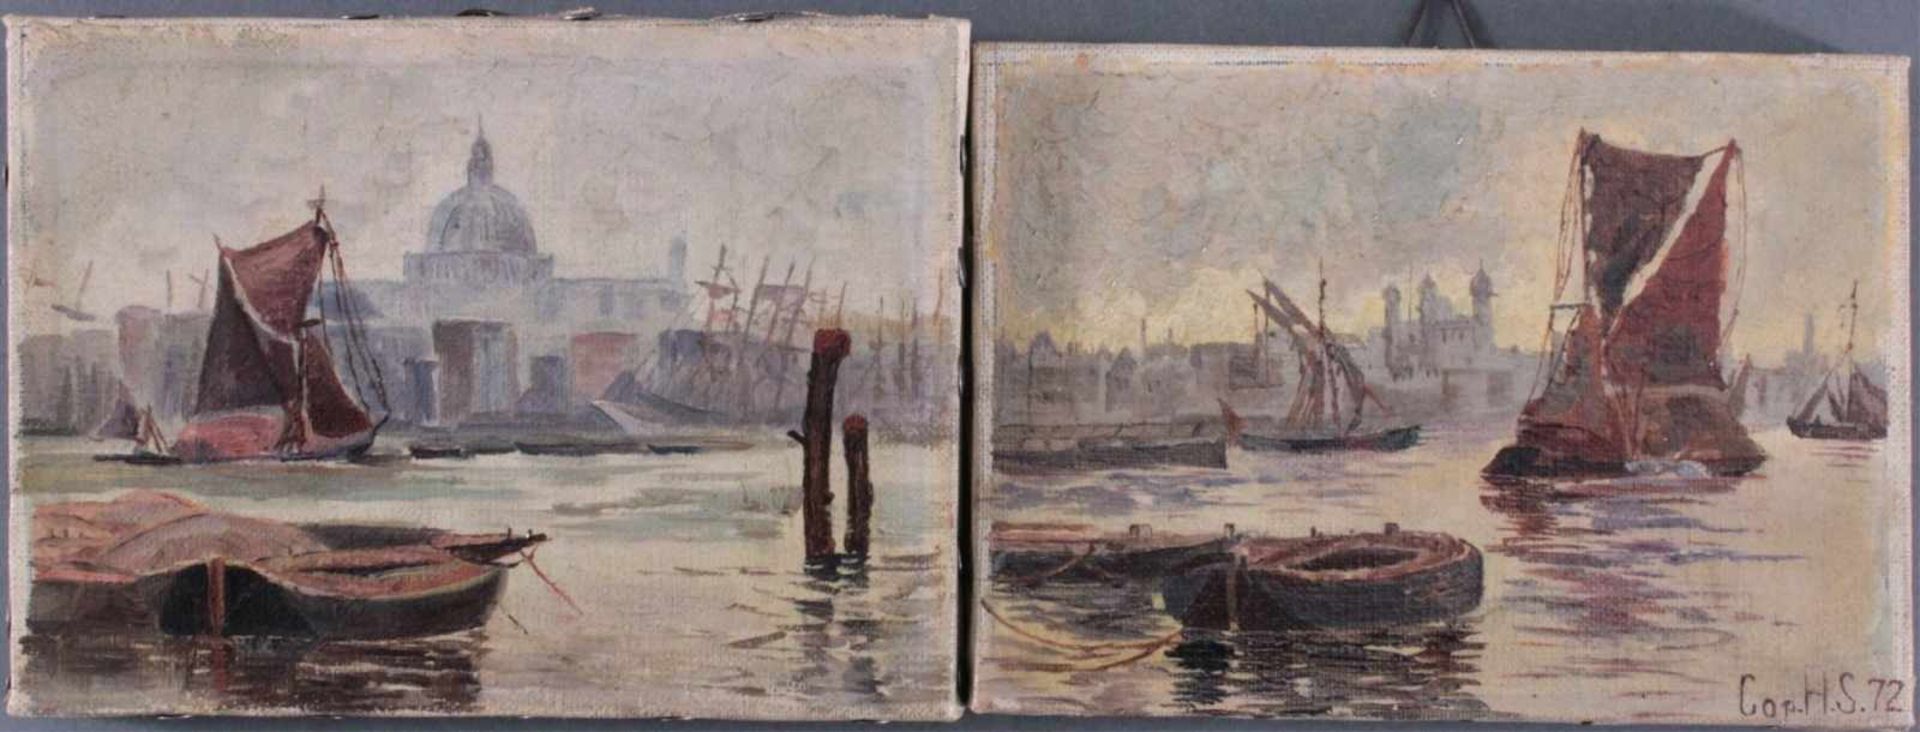 2 kleine Gemälde "Venedig"Öl auf Leinwand gemalt, 1 Bild unten rechts bez. Cop H.AS.72, gerahmt, ca. - Bild 4 aus 5